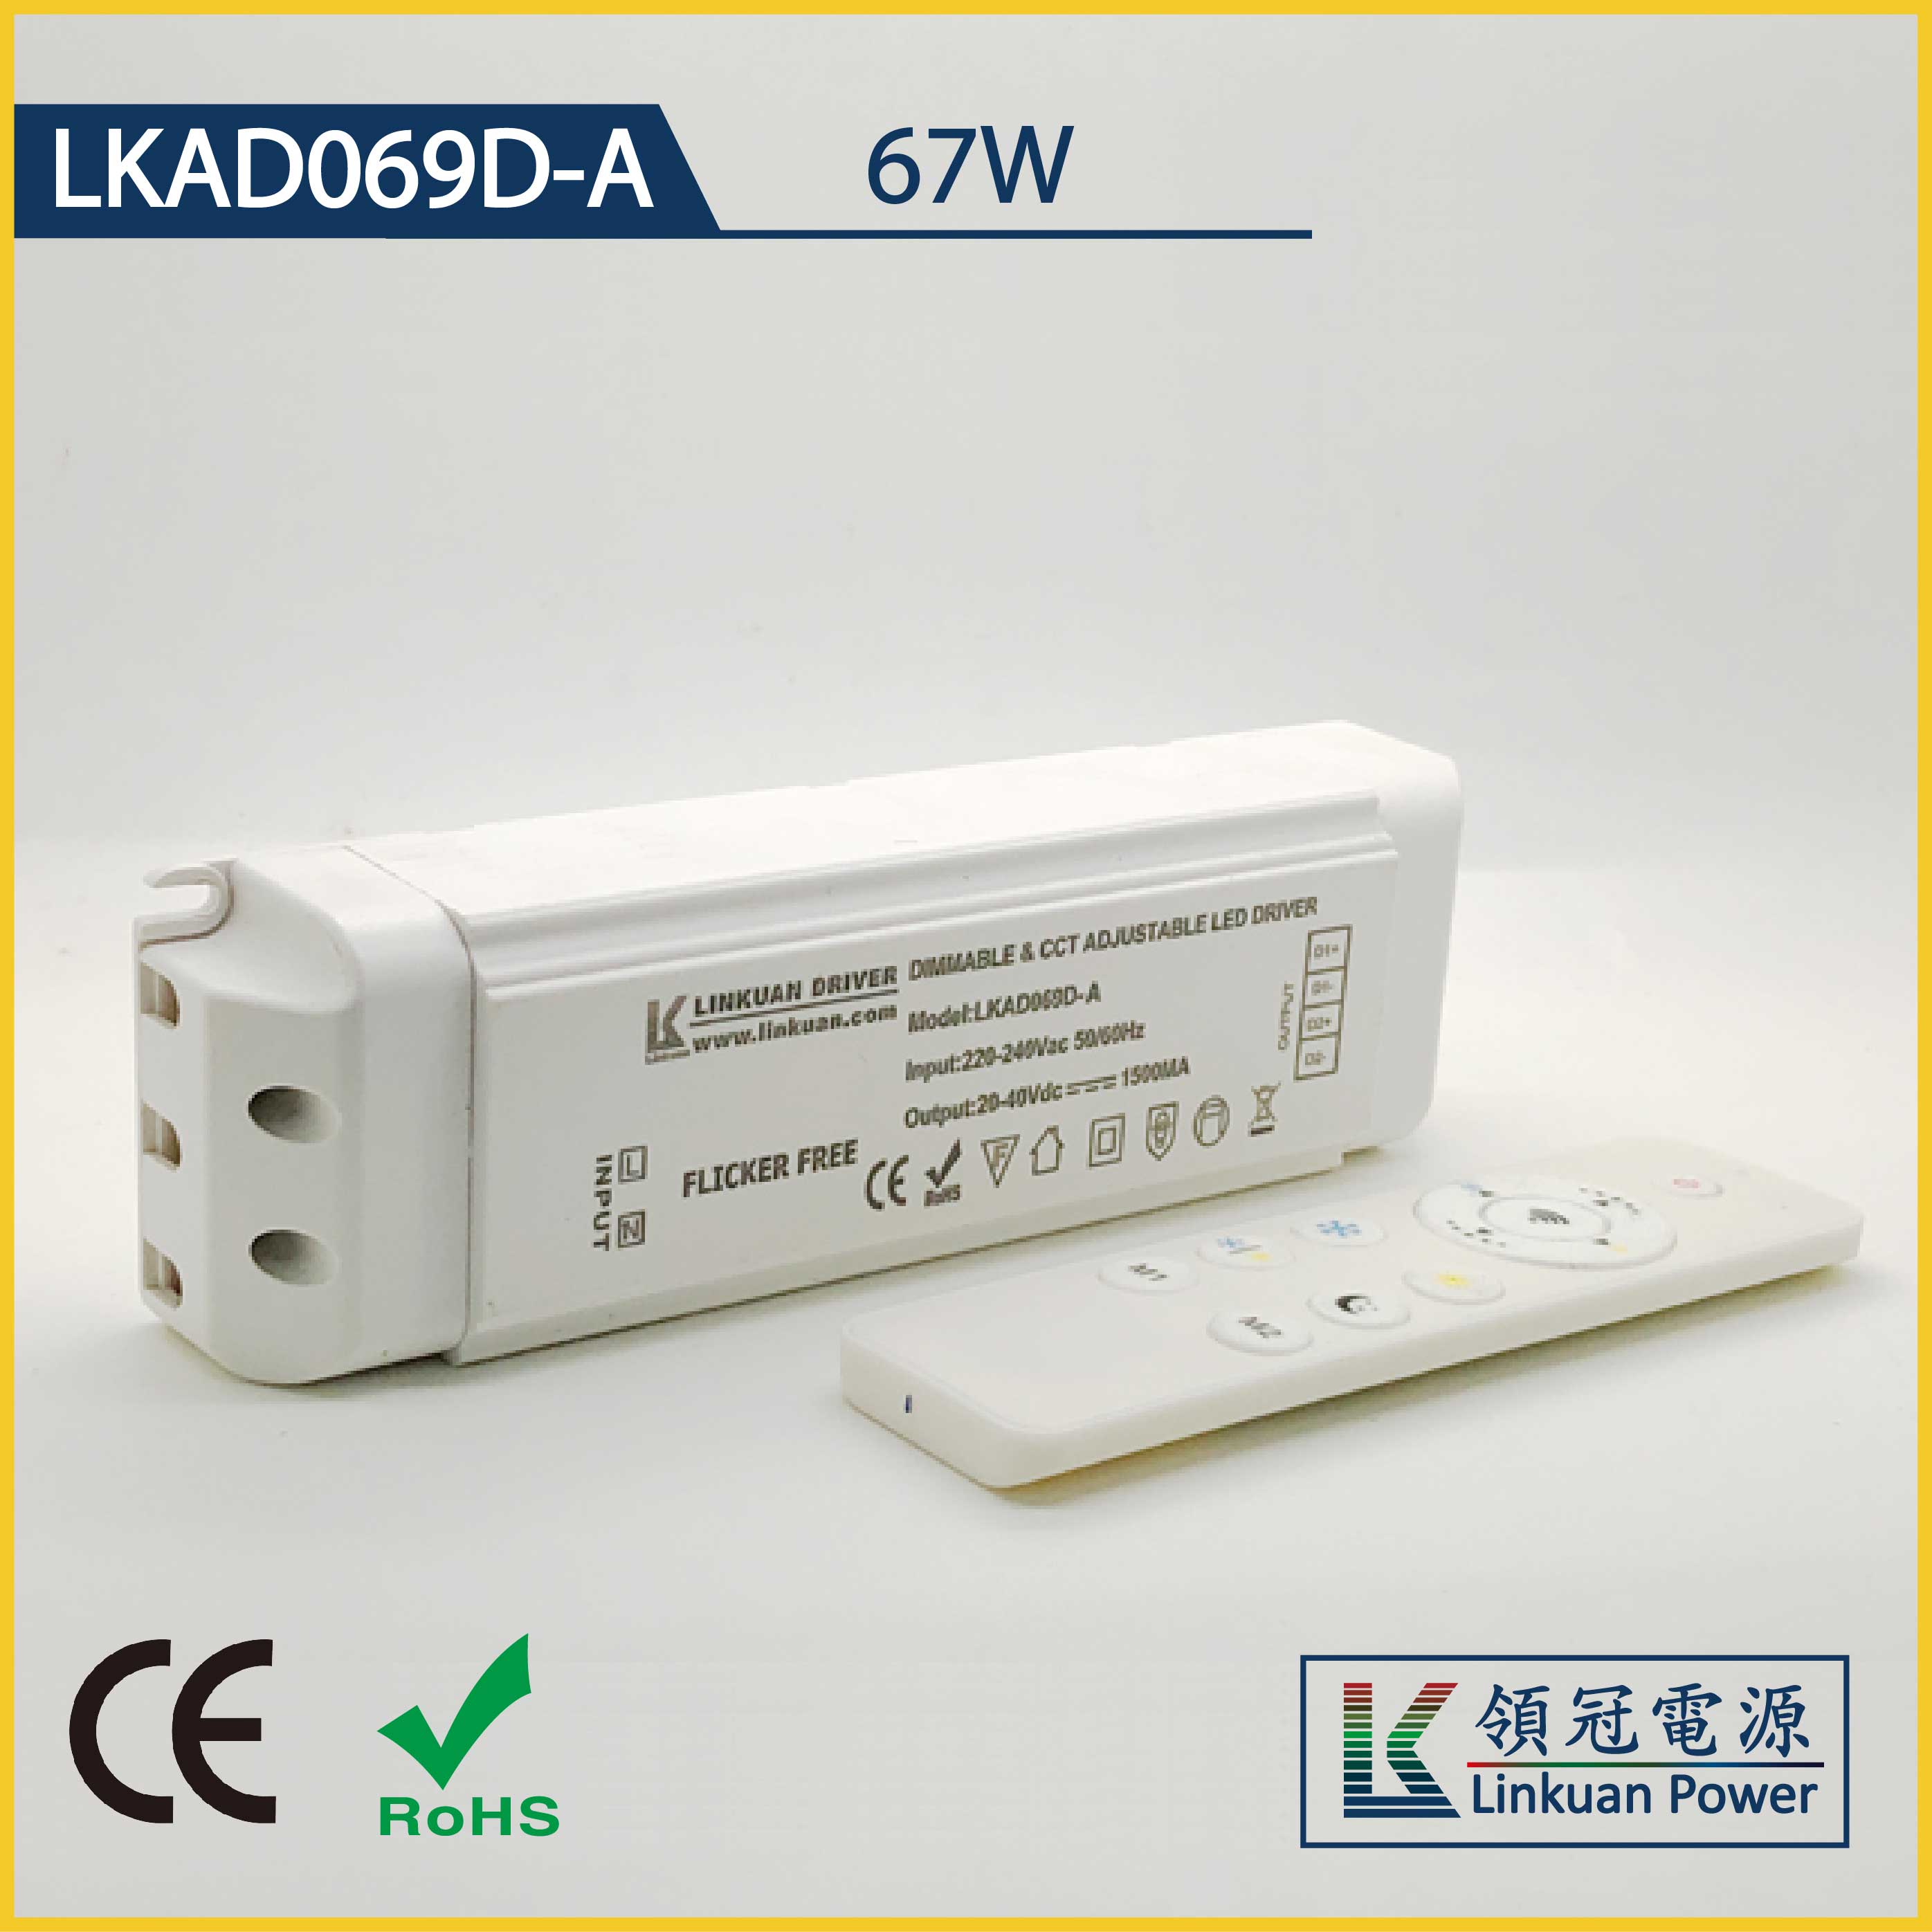 LKAD069D-A 67W 10-42V 1600mA CCT Adjusting LED drivers